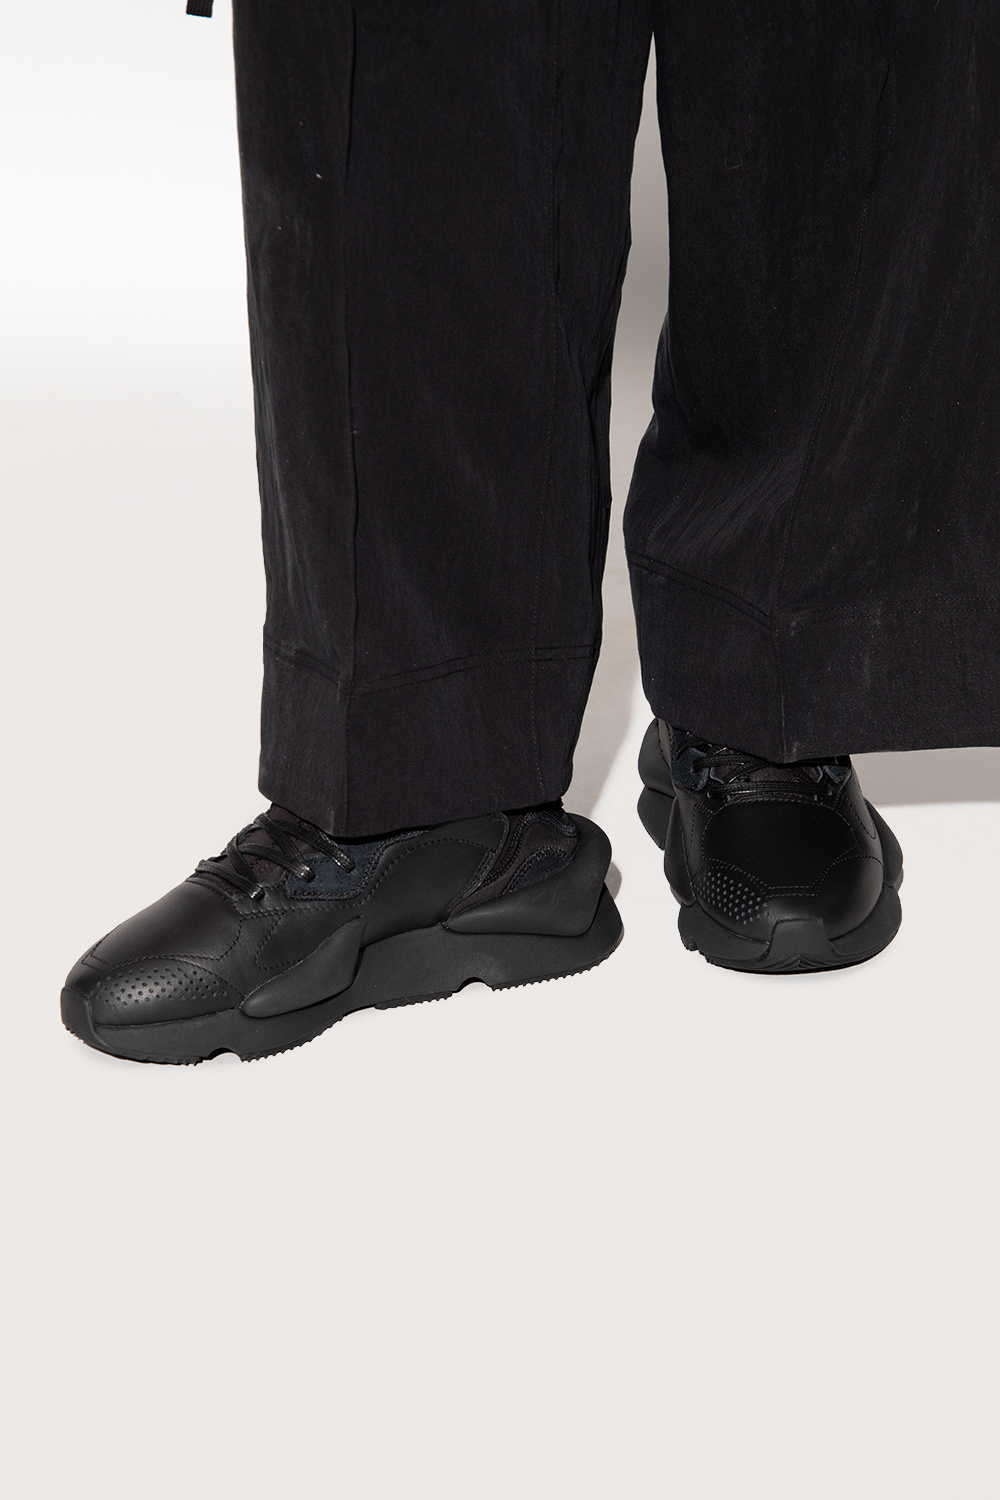 Y-3 Yohji Yamamoto 'Kaiwa' sneakers | Women's Shoes | Vitkac